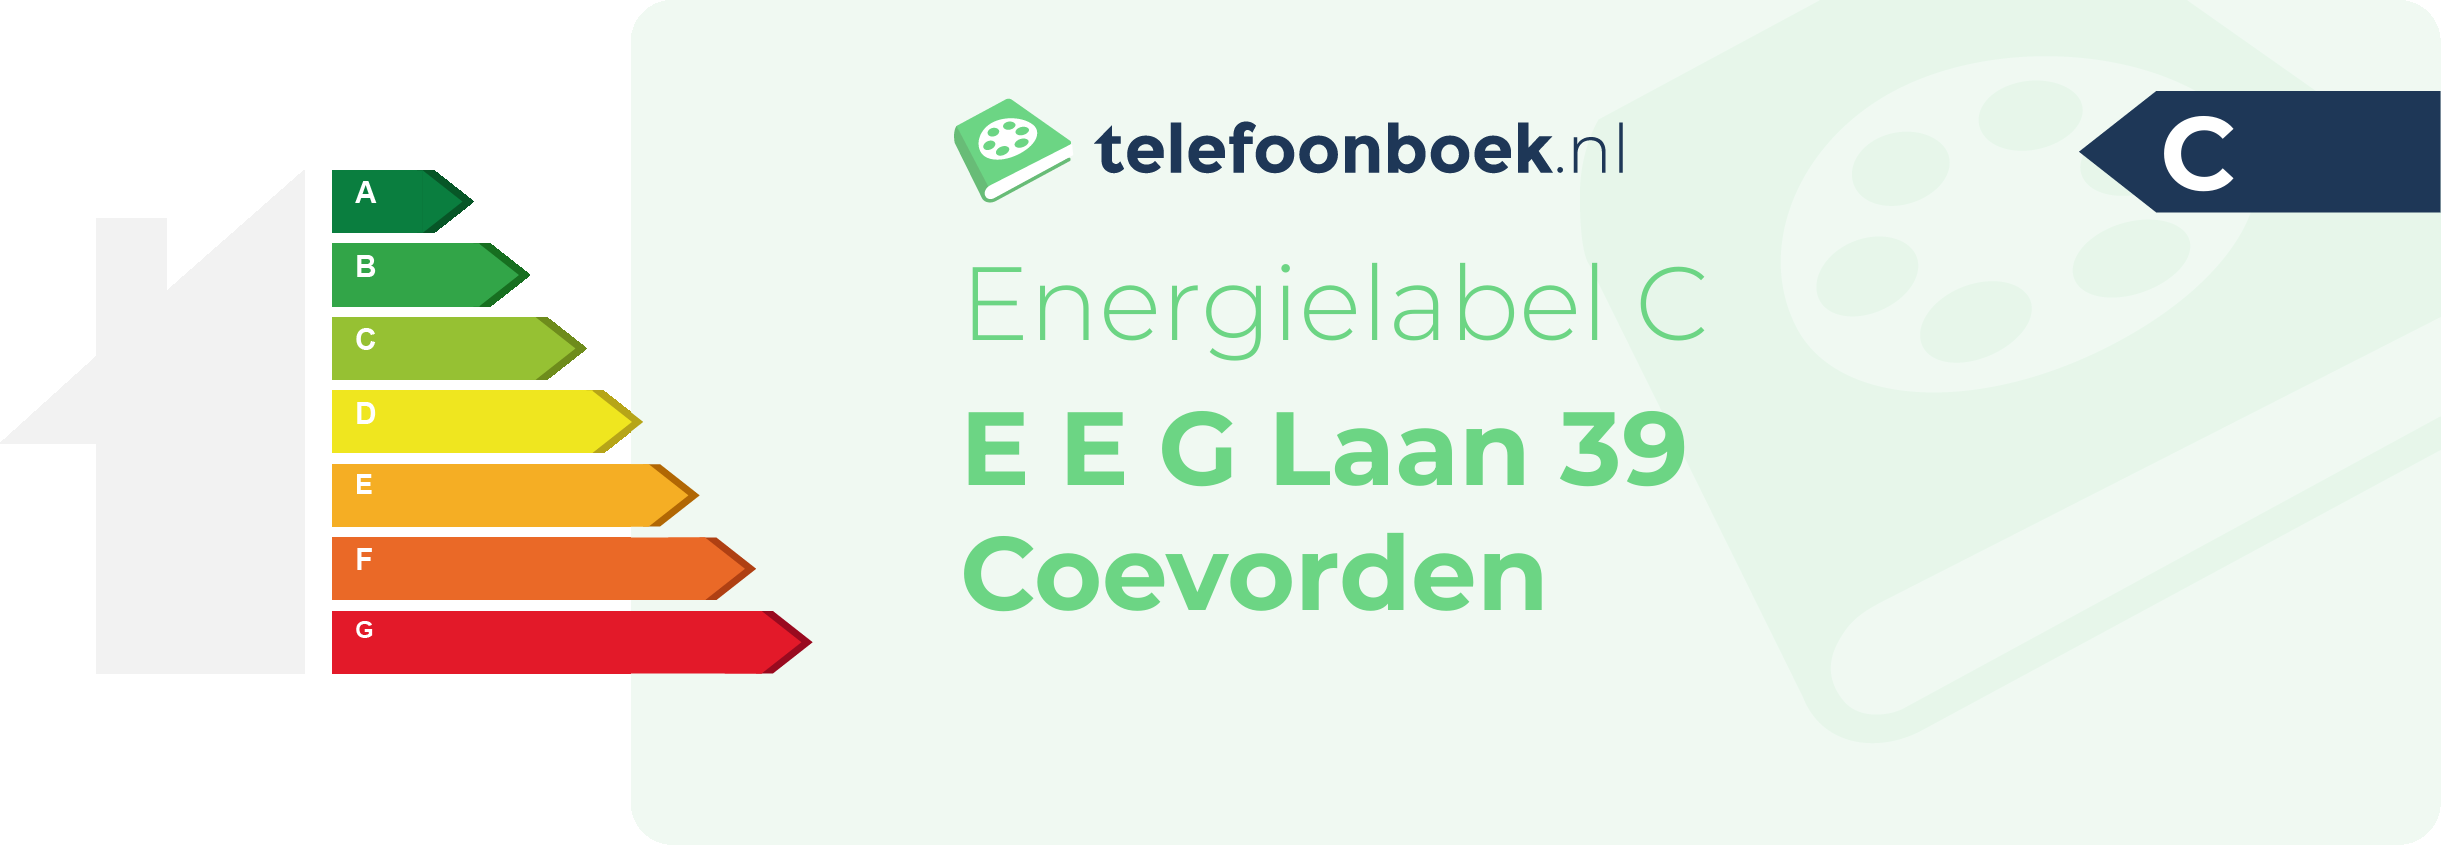 Energielabel E E G Laan 39 Coevorden